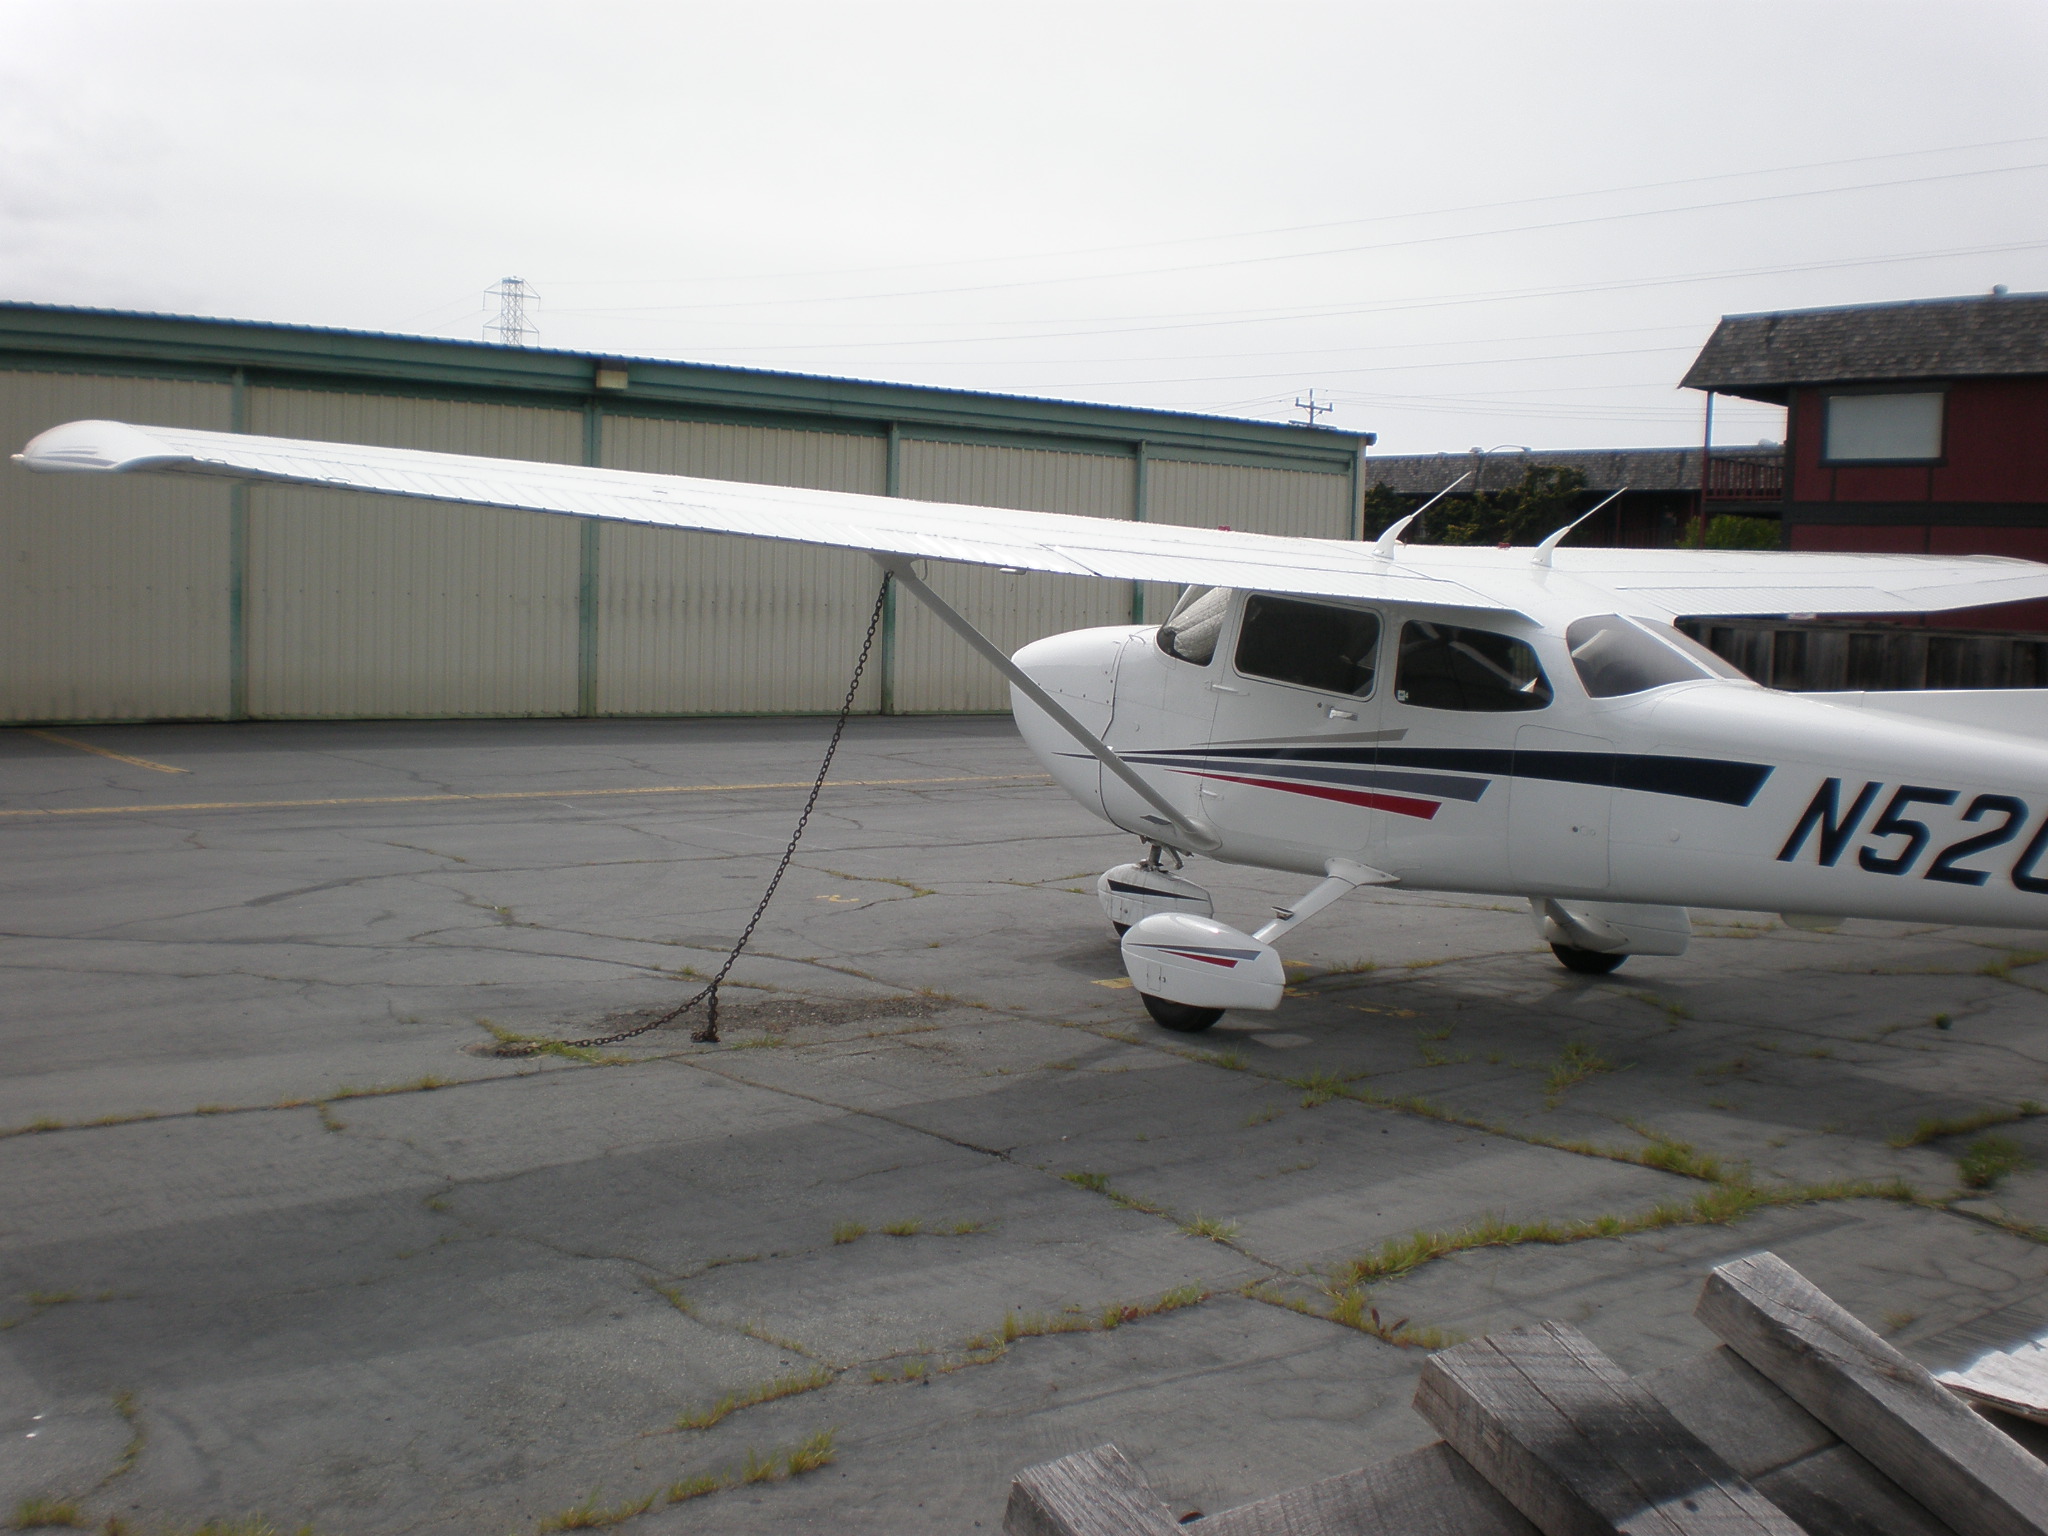 Cessna 172R/S Skyhawk next